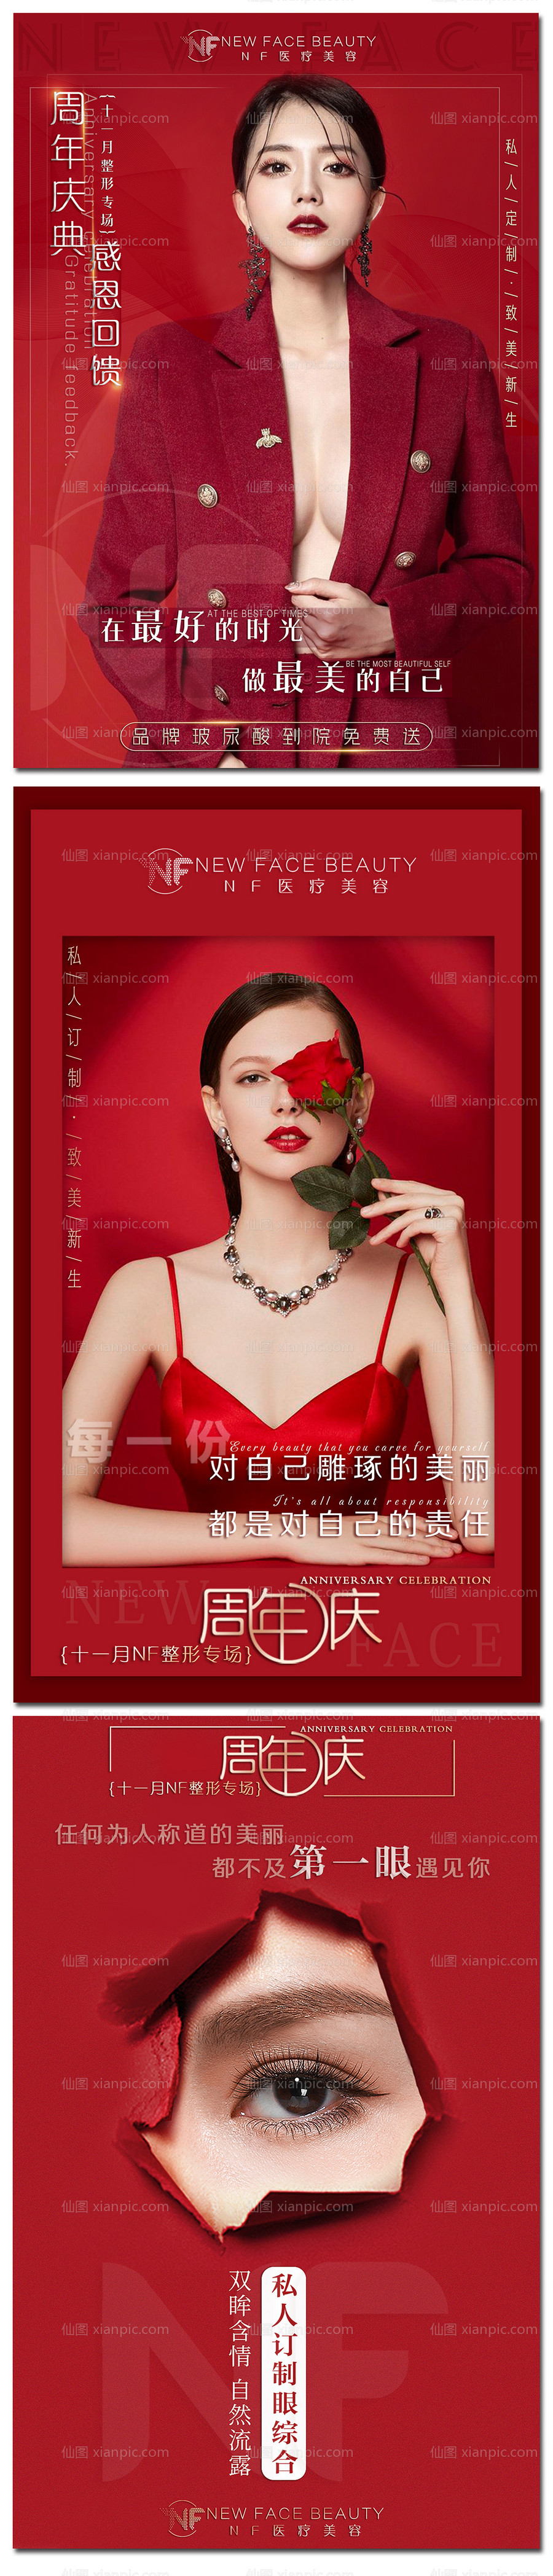 素材乐-整形美容红色周年庆鸡汤海报